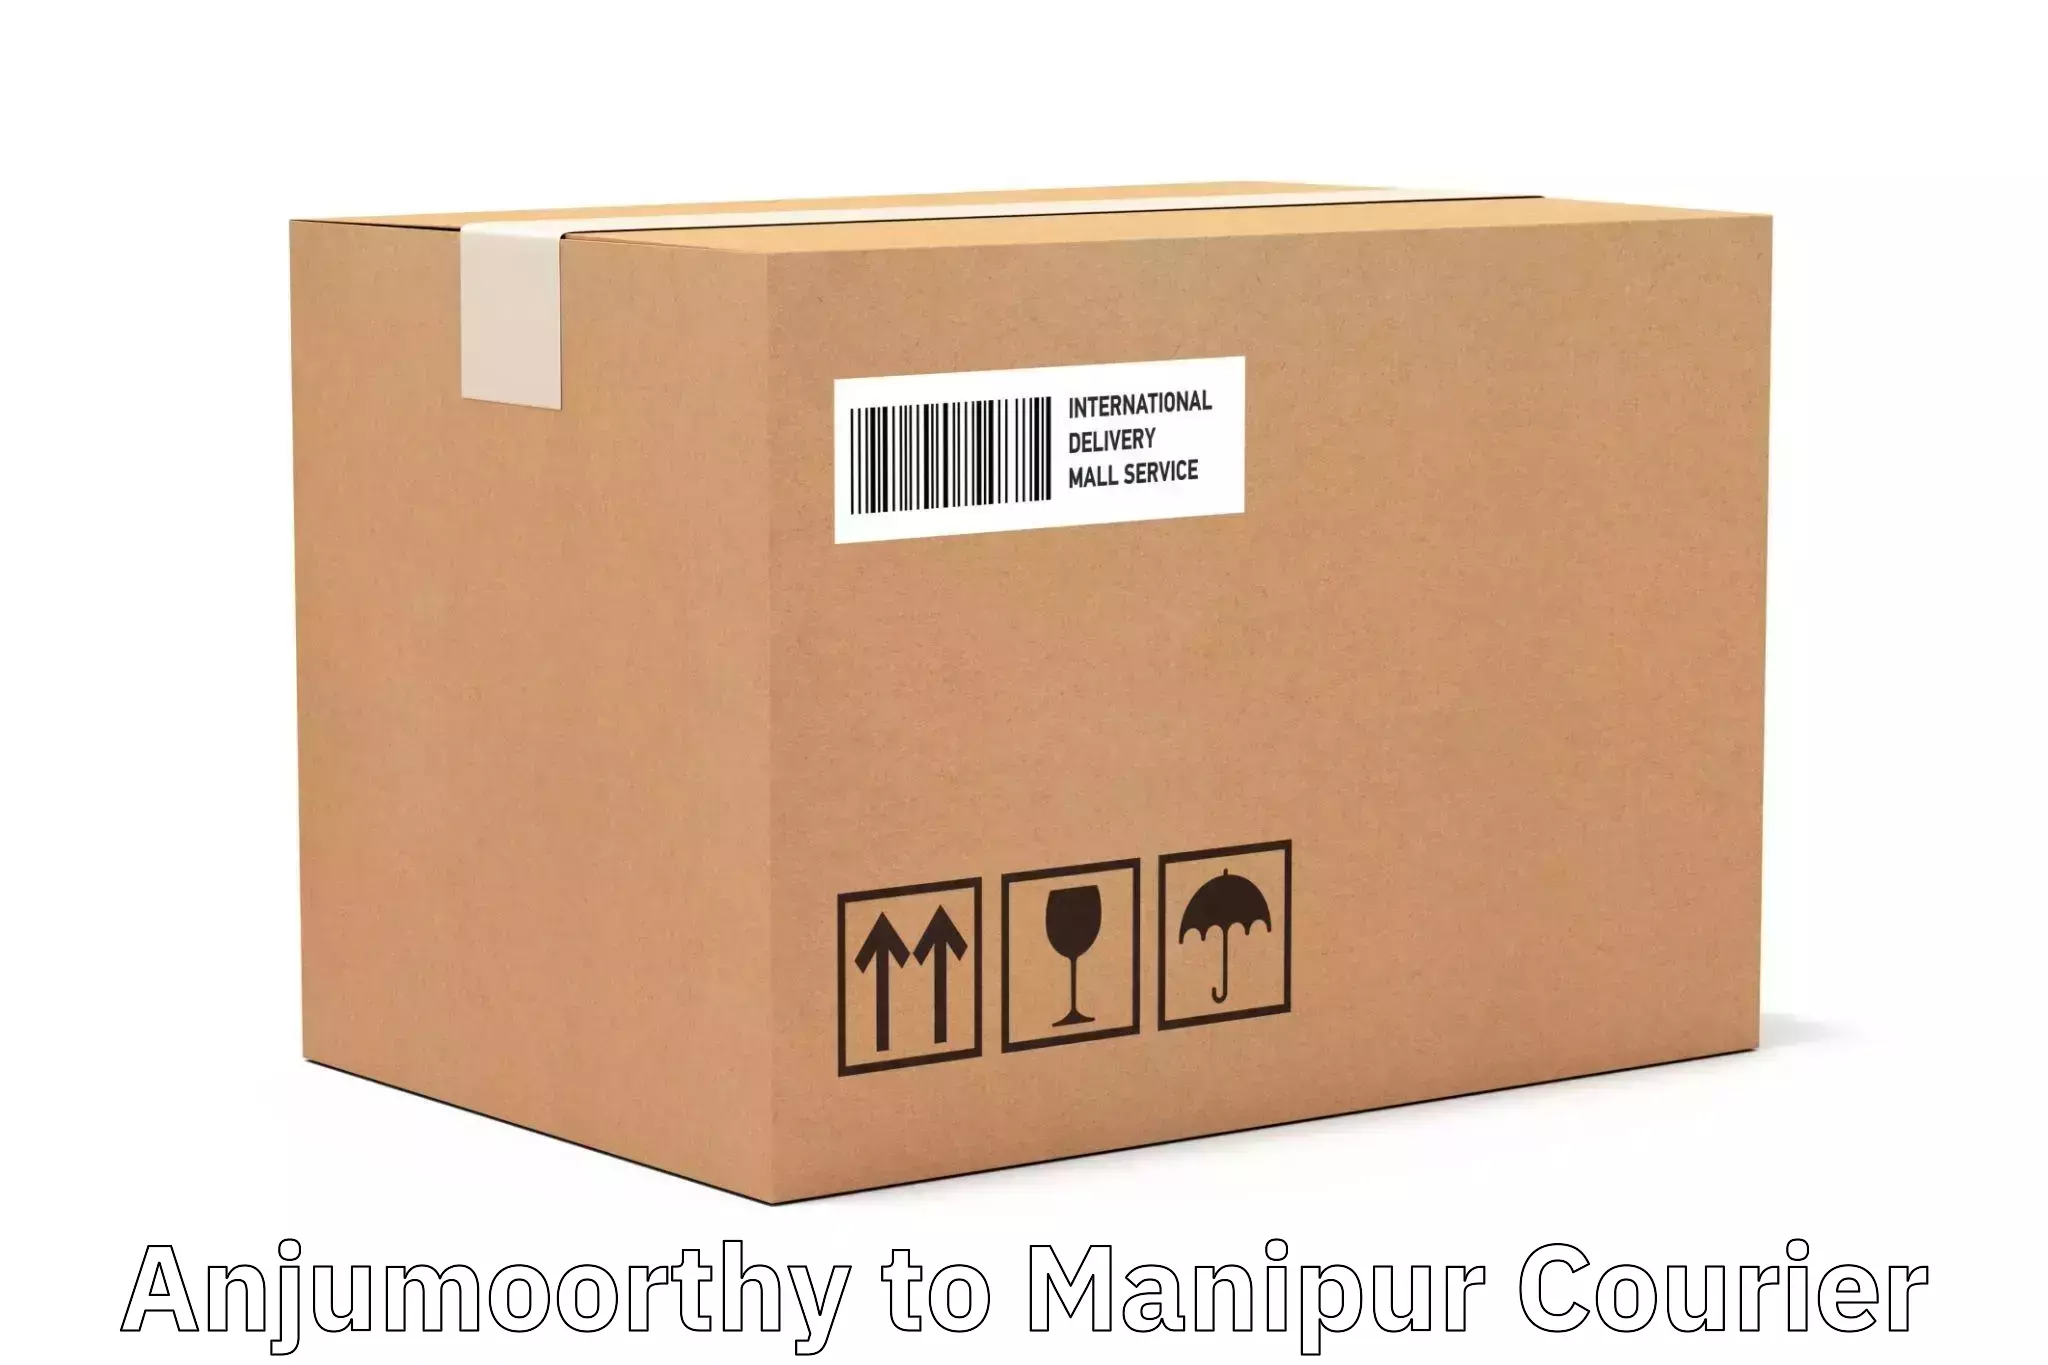 Express logistics providers Anjumoorthy to Moirang